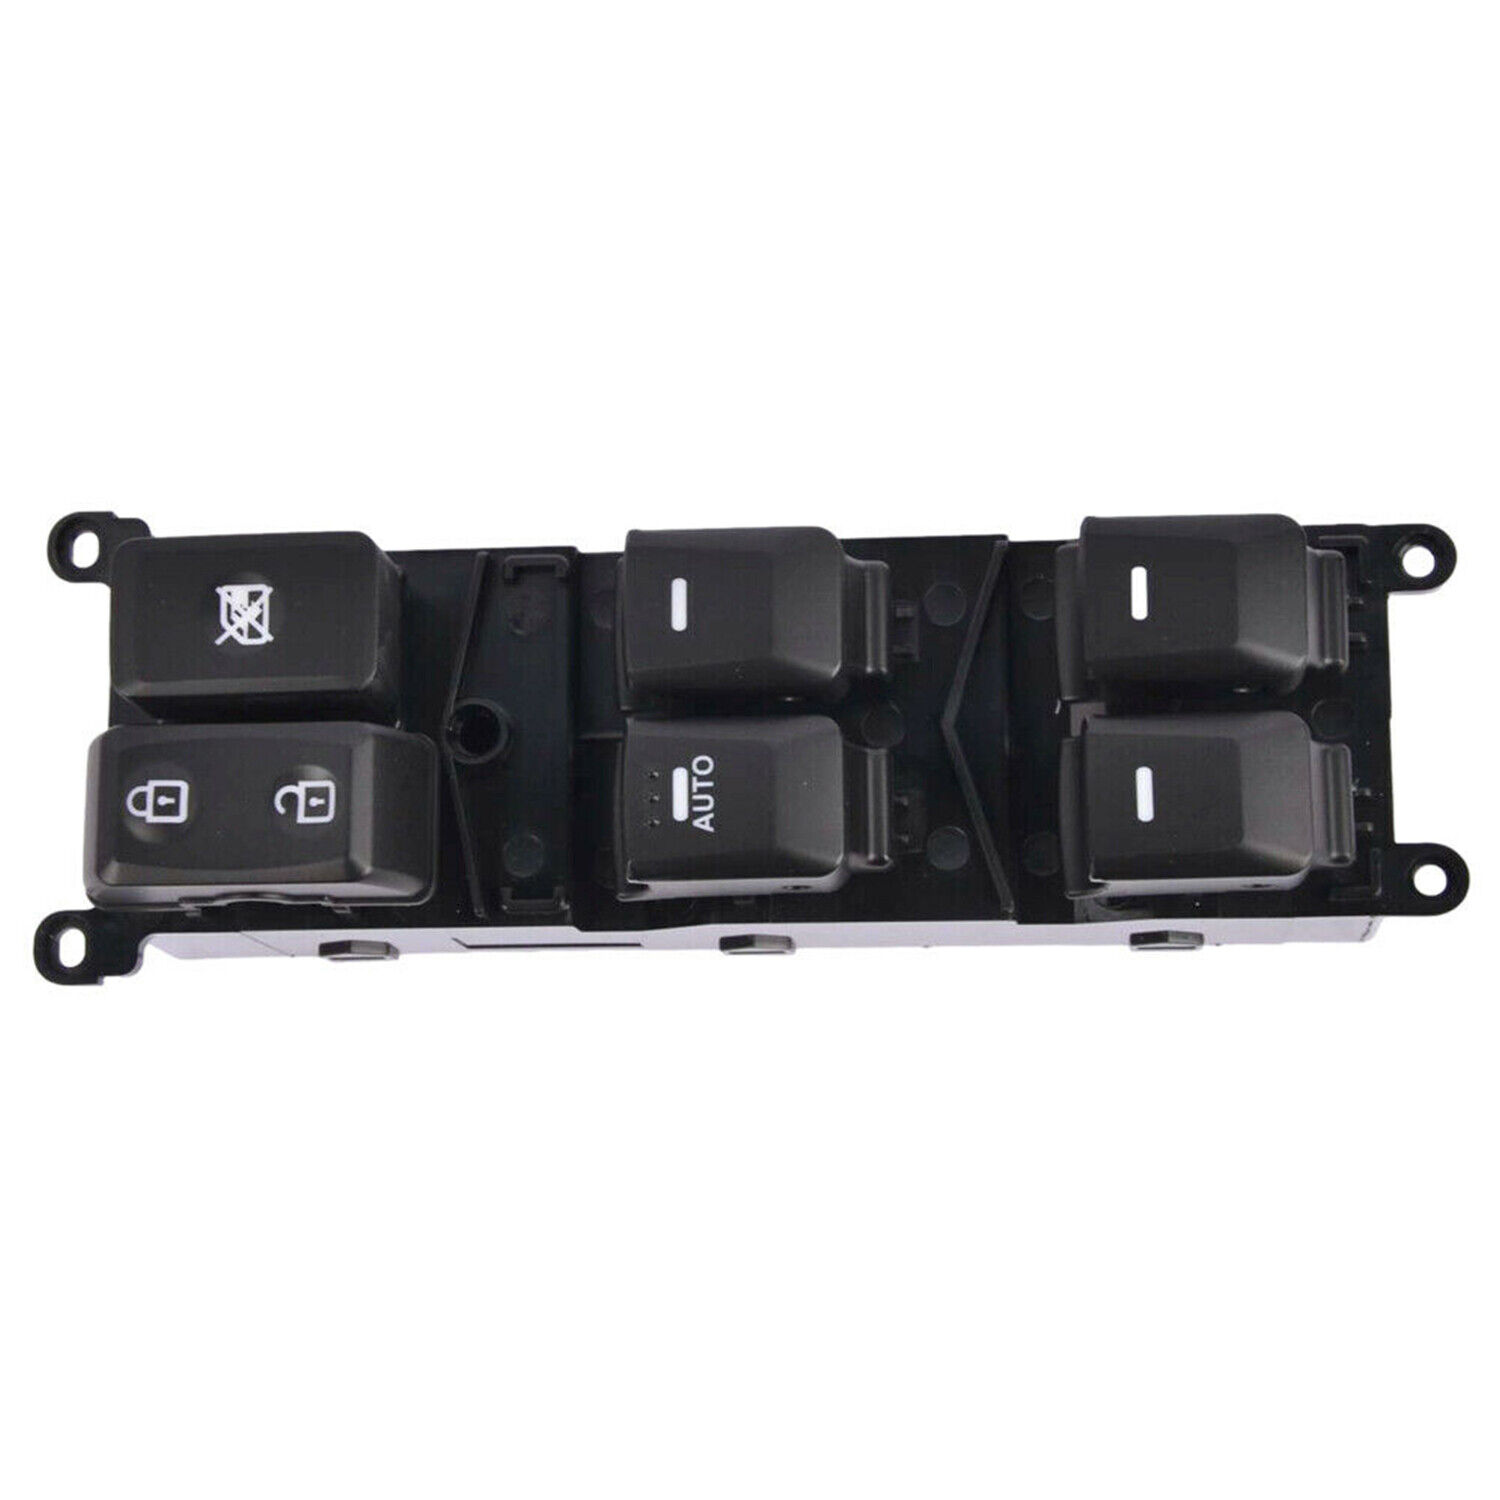 Driver Side Power Window Switch Fits For KIA RIO 1.6L 2012-2014 93570-1W155